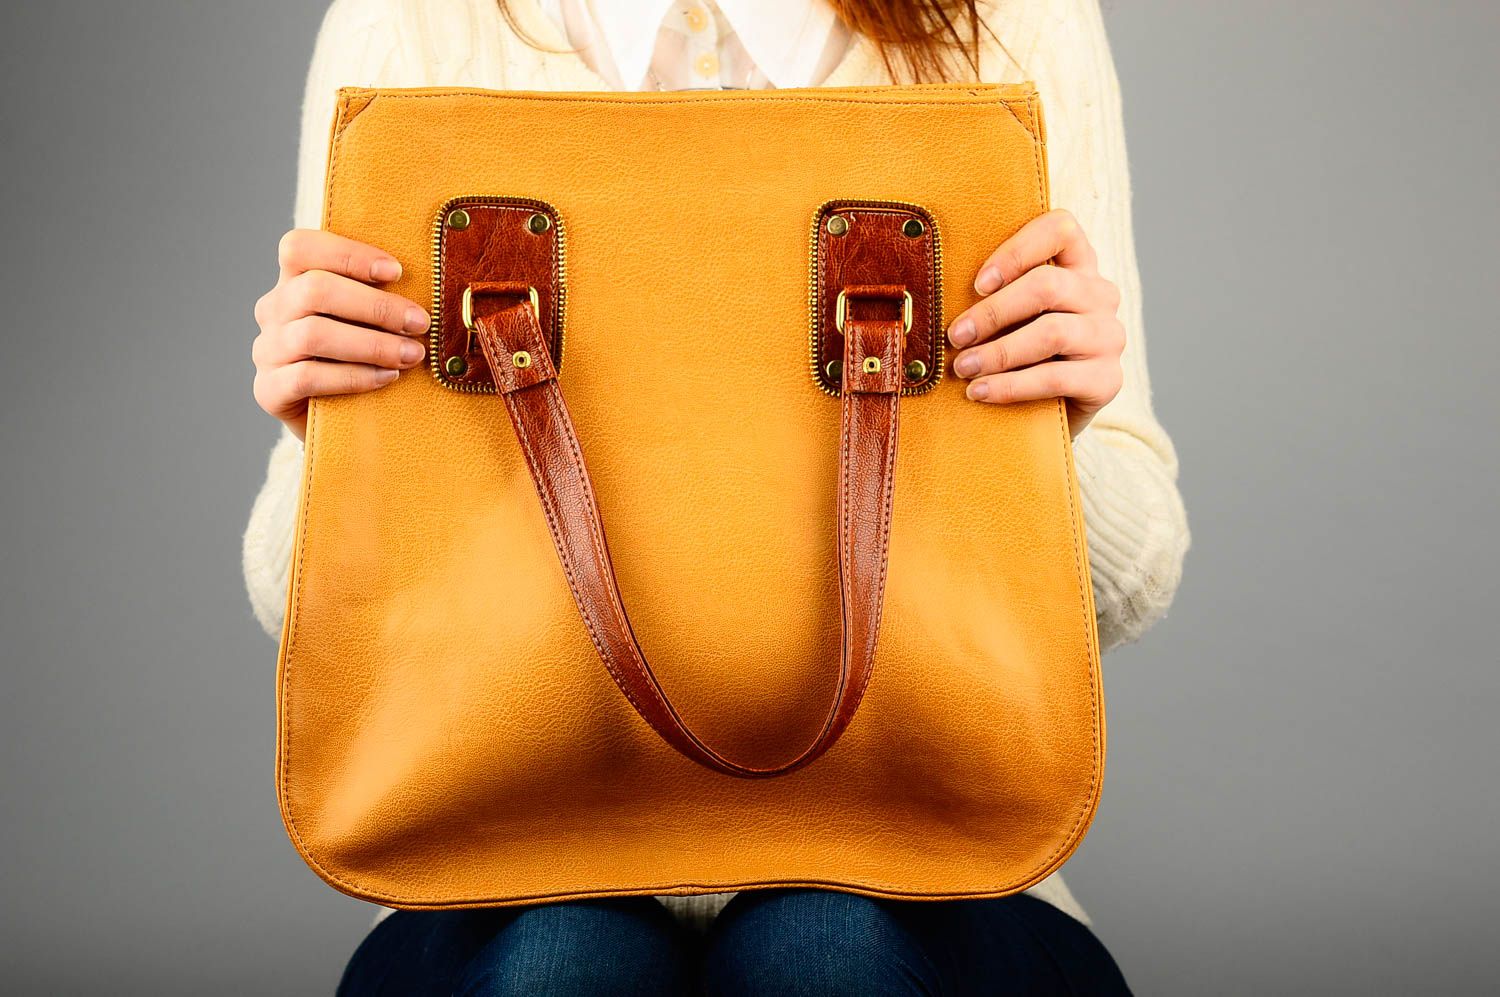 Сумка ручной работы сумка на плечо из кожзама женская сумка желтая стильная фото 2